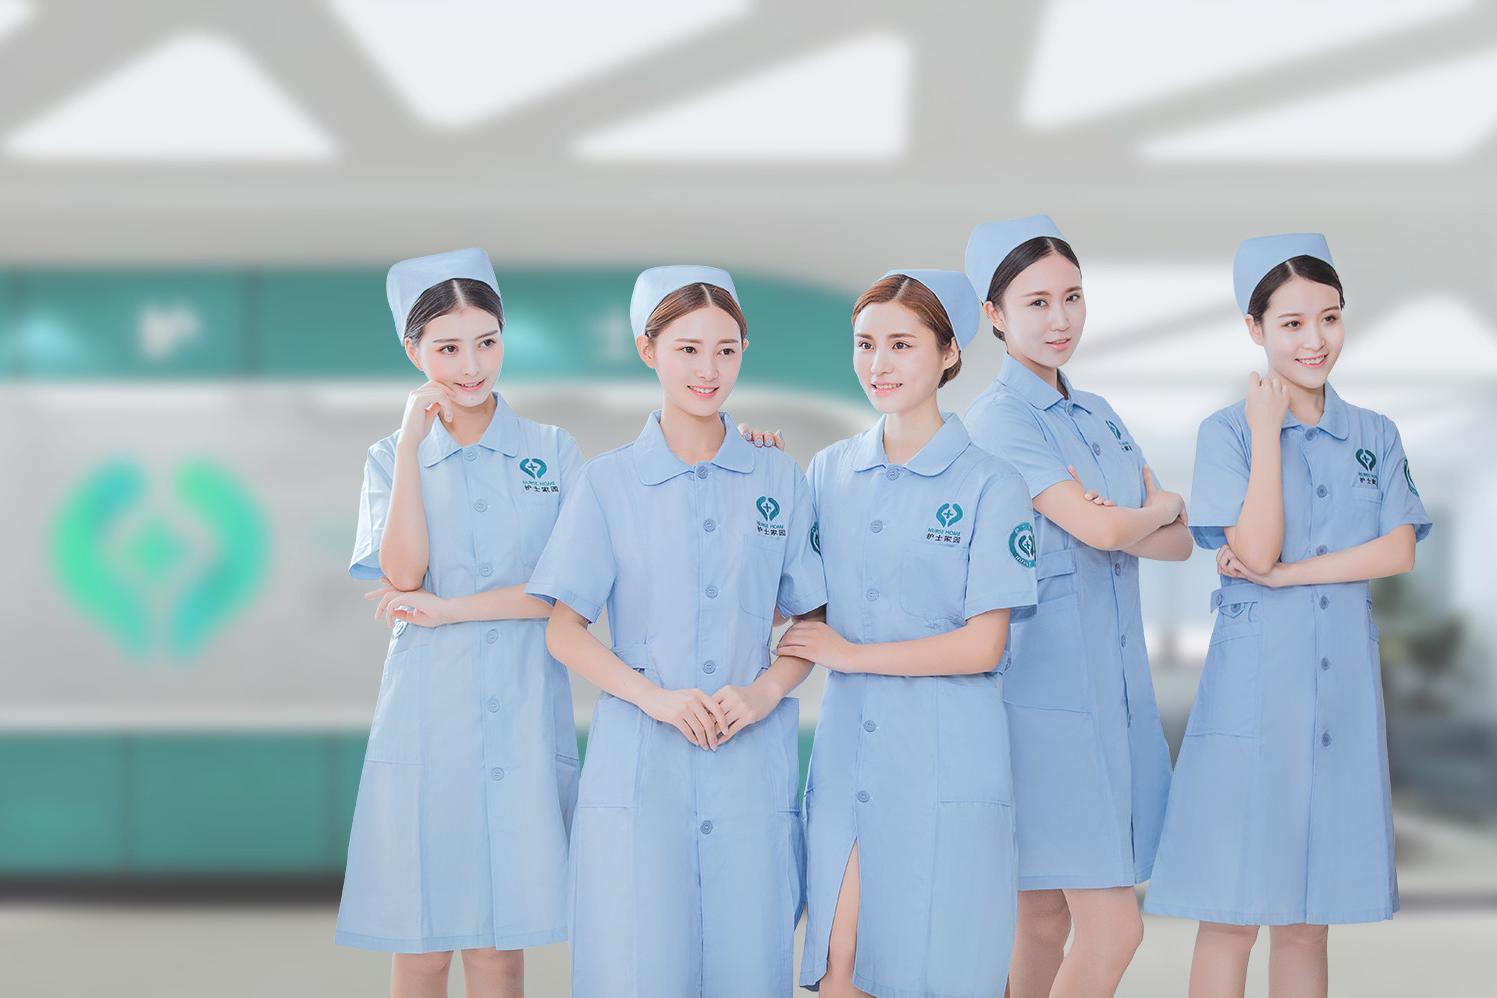 世界杯各国护士巡礼,快找找看中国护士在哪!